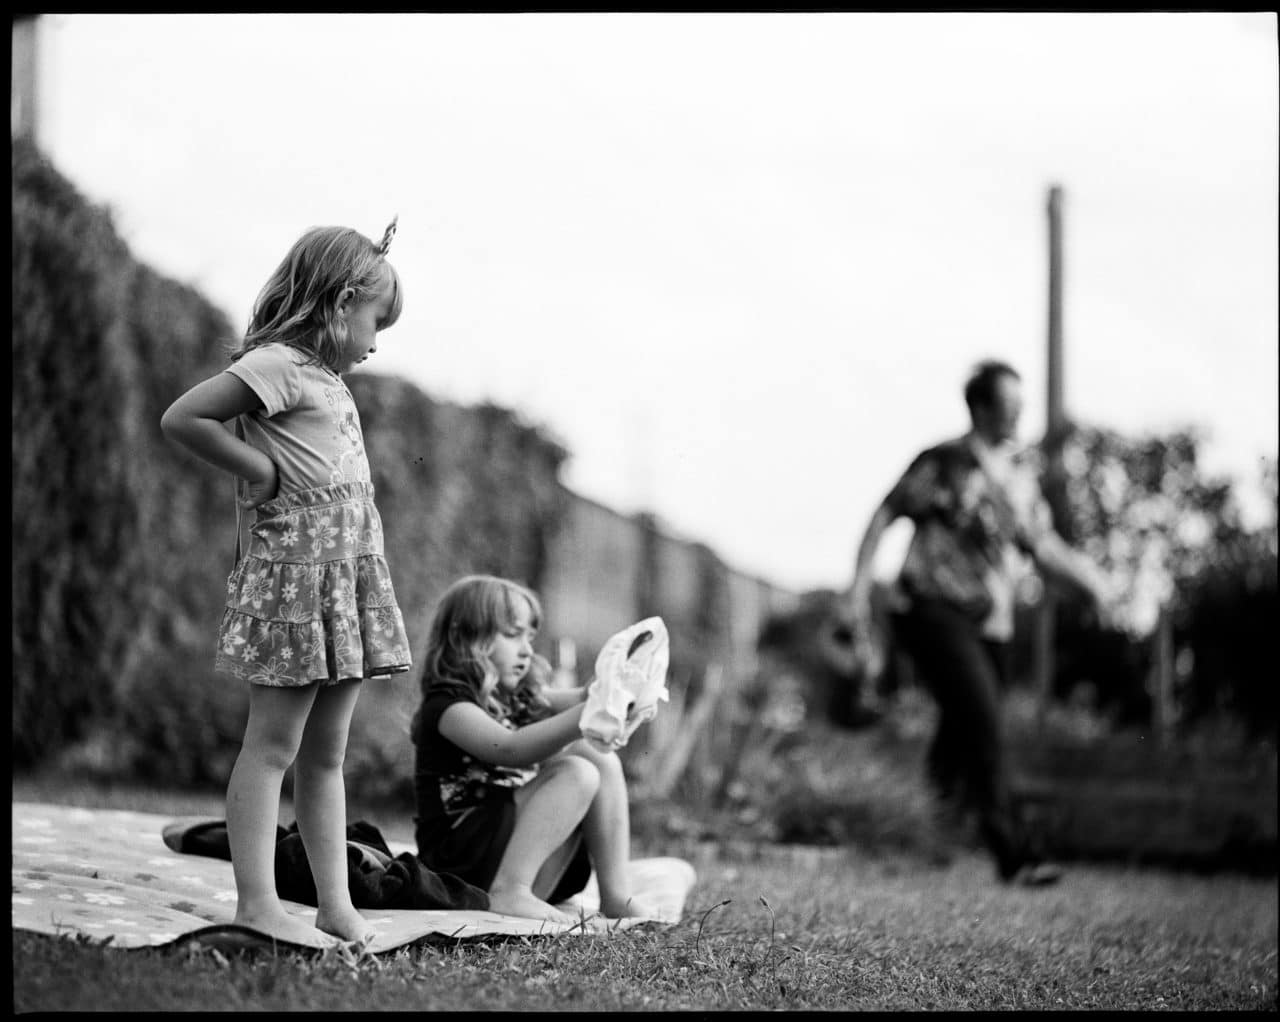 Summer bliss - Pentax 67 - Kodak Tri-X 320